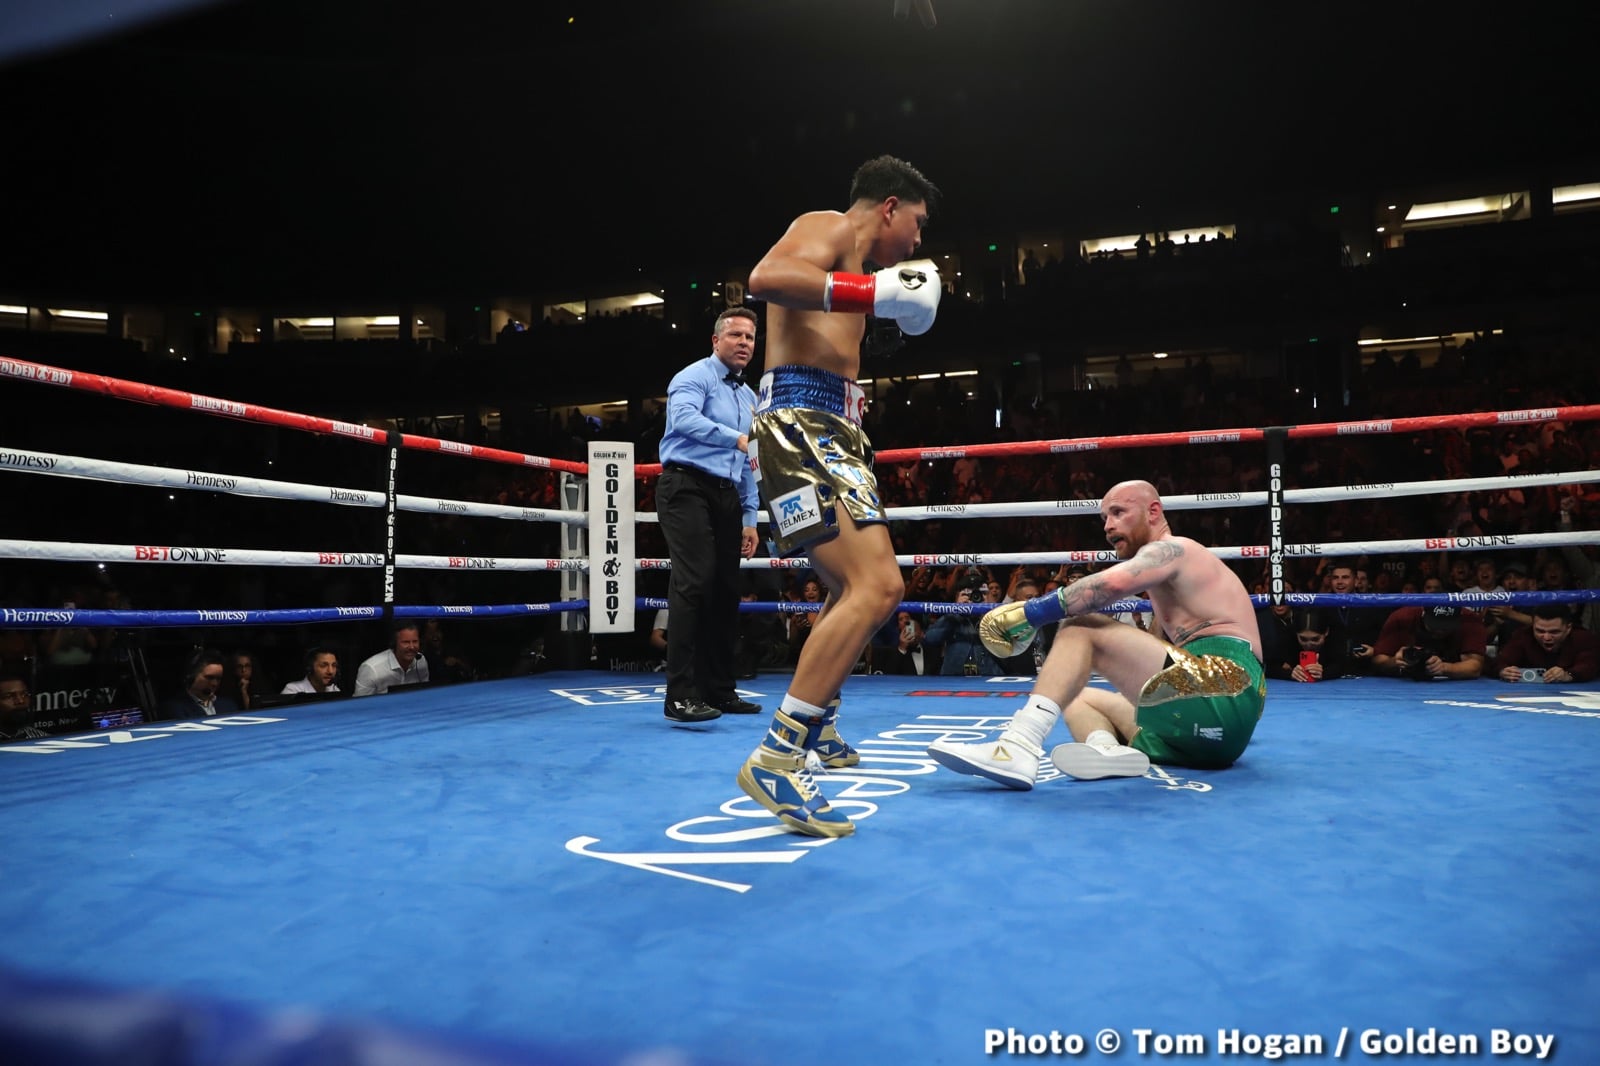 Jaime Munguia, Jimmy Kelly boxing image / photo